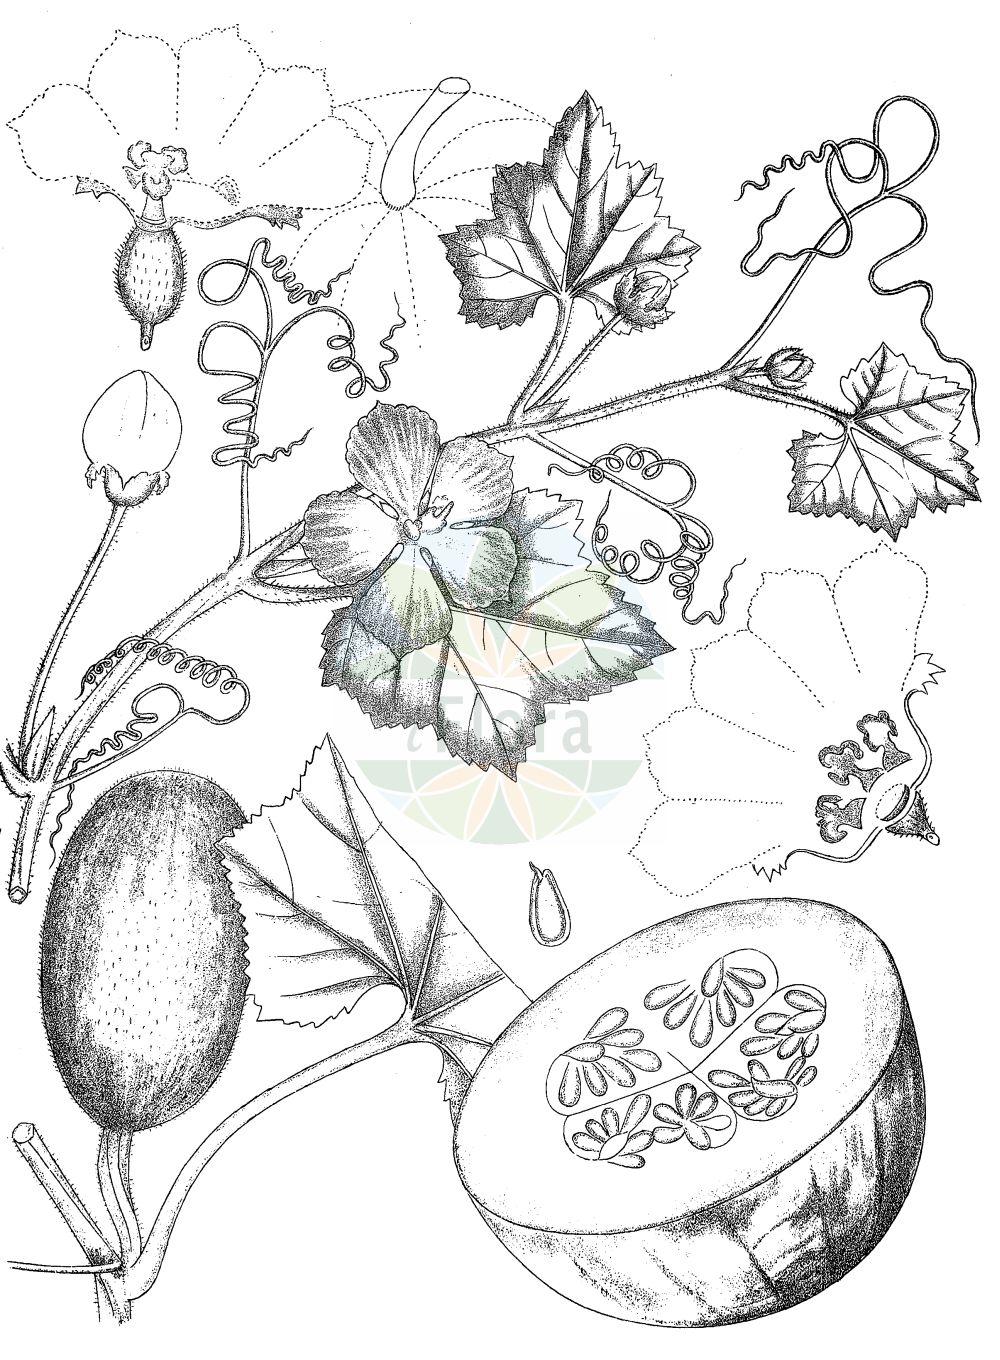 Historische Abbildung von Cucurbita pepo (Marrow). Das Bild zeigt Blatt, Bluete, Frucht und Same. ---- Historical Drawing of Cucurbita pepo (Marrow). The image is showing leaf, flower, fruit and seed.(Cucurbita pepo,Marrow,Cucurbita aurantia,Cucurbita clodiensis,Cucurbita melopepo,Cucurbita oblonga,Cucurbita ovifera,Cucurbita pepo,Cucurbita verrucosa,Cucurbita,Cucurbitaceae,Kürbisgewächse,Cucurbit family,Blatt,Bluete,Frucht,Same,leaf,flower,fruit,seed,Kirtikar & Basu (1918))